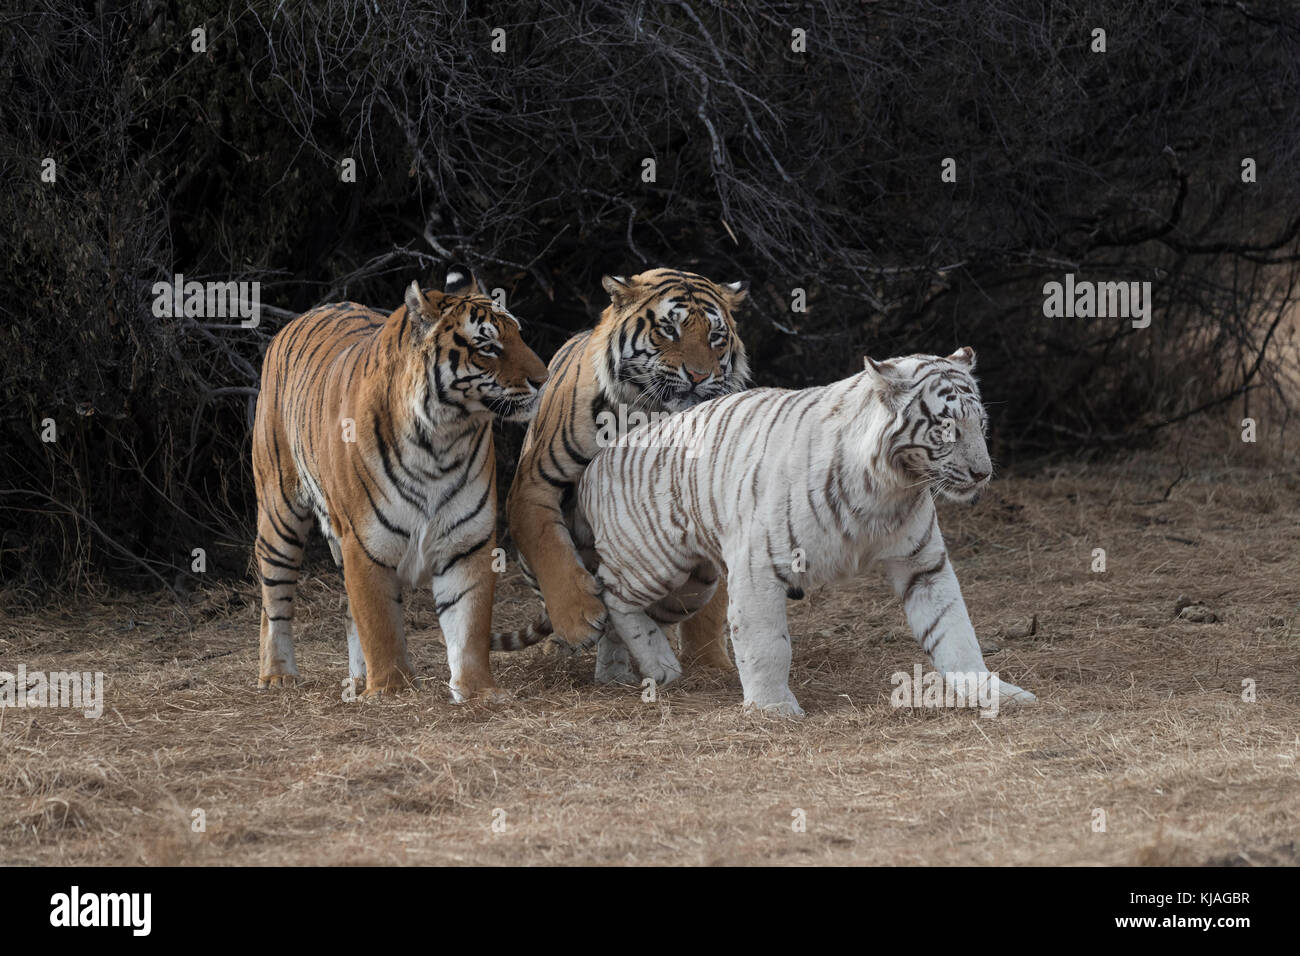 Asia (Bengala) el tigre (Panthera tigris tigris), dos normal (varones) y una blanca (hembra) en período de celo, uno de los machos es hijo de la tigresa blanca y ella se niega a aparearse con él, ya que intenta desesperadamente para ganar sus favores, acoplamiento Foto de stock